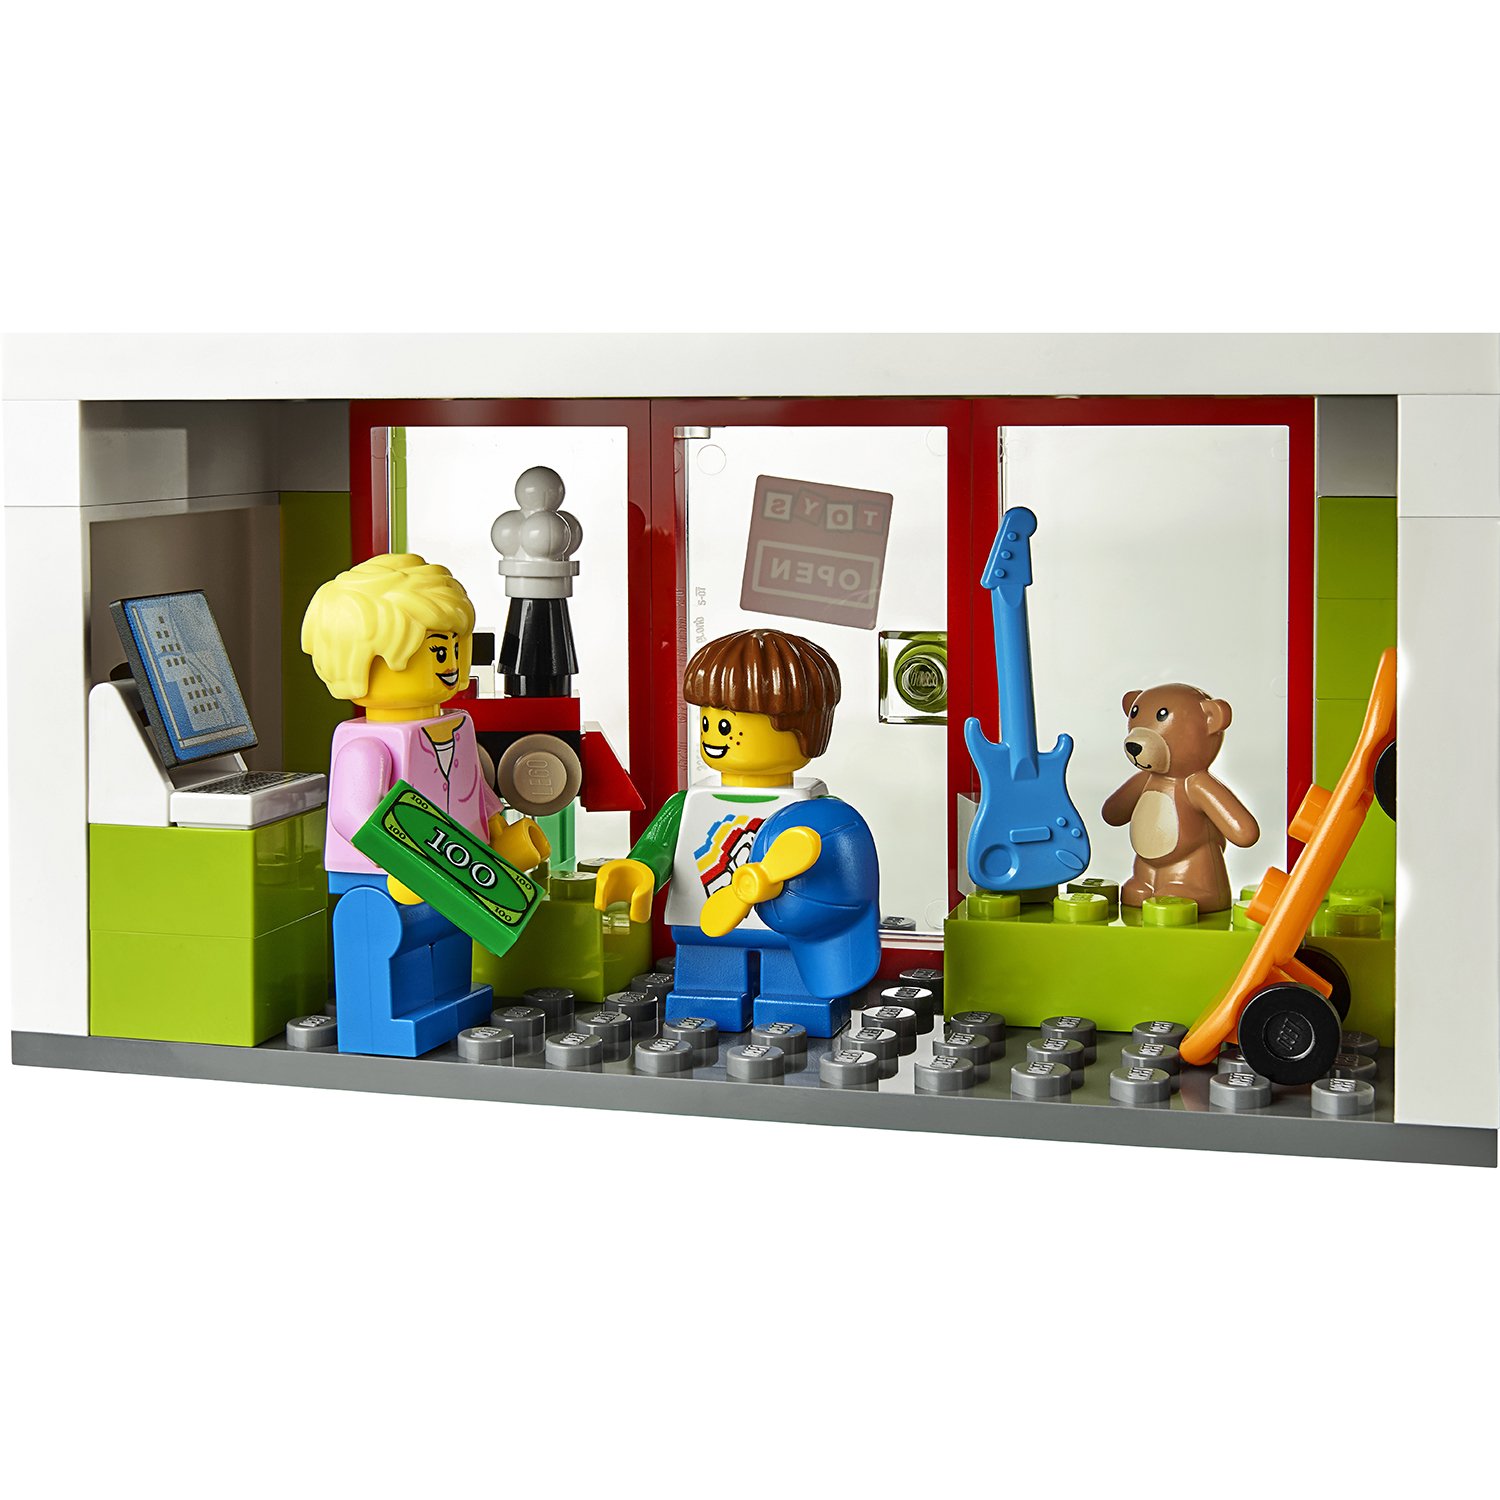 Lego City 60233 Открытие магазина по продаже пончиков